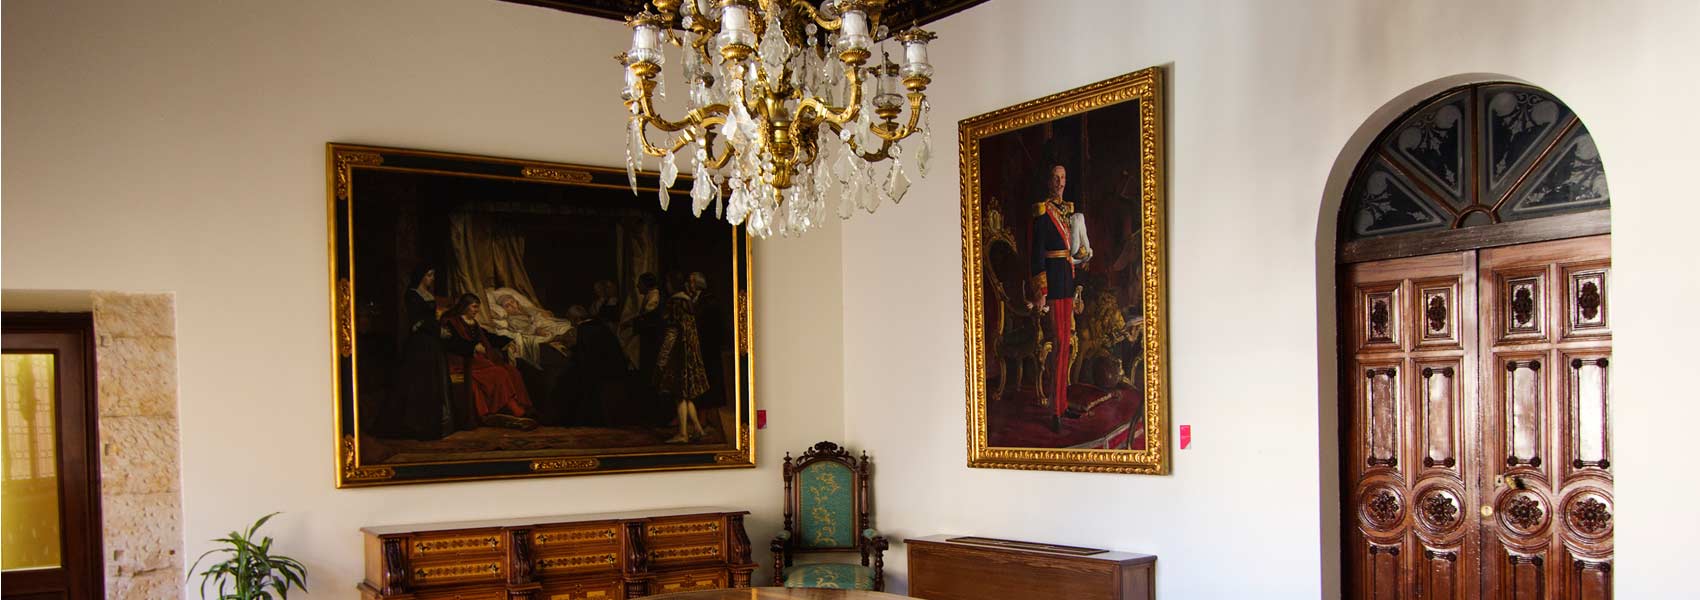 Sala interior de la Diputación de Salamanca